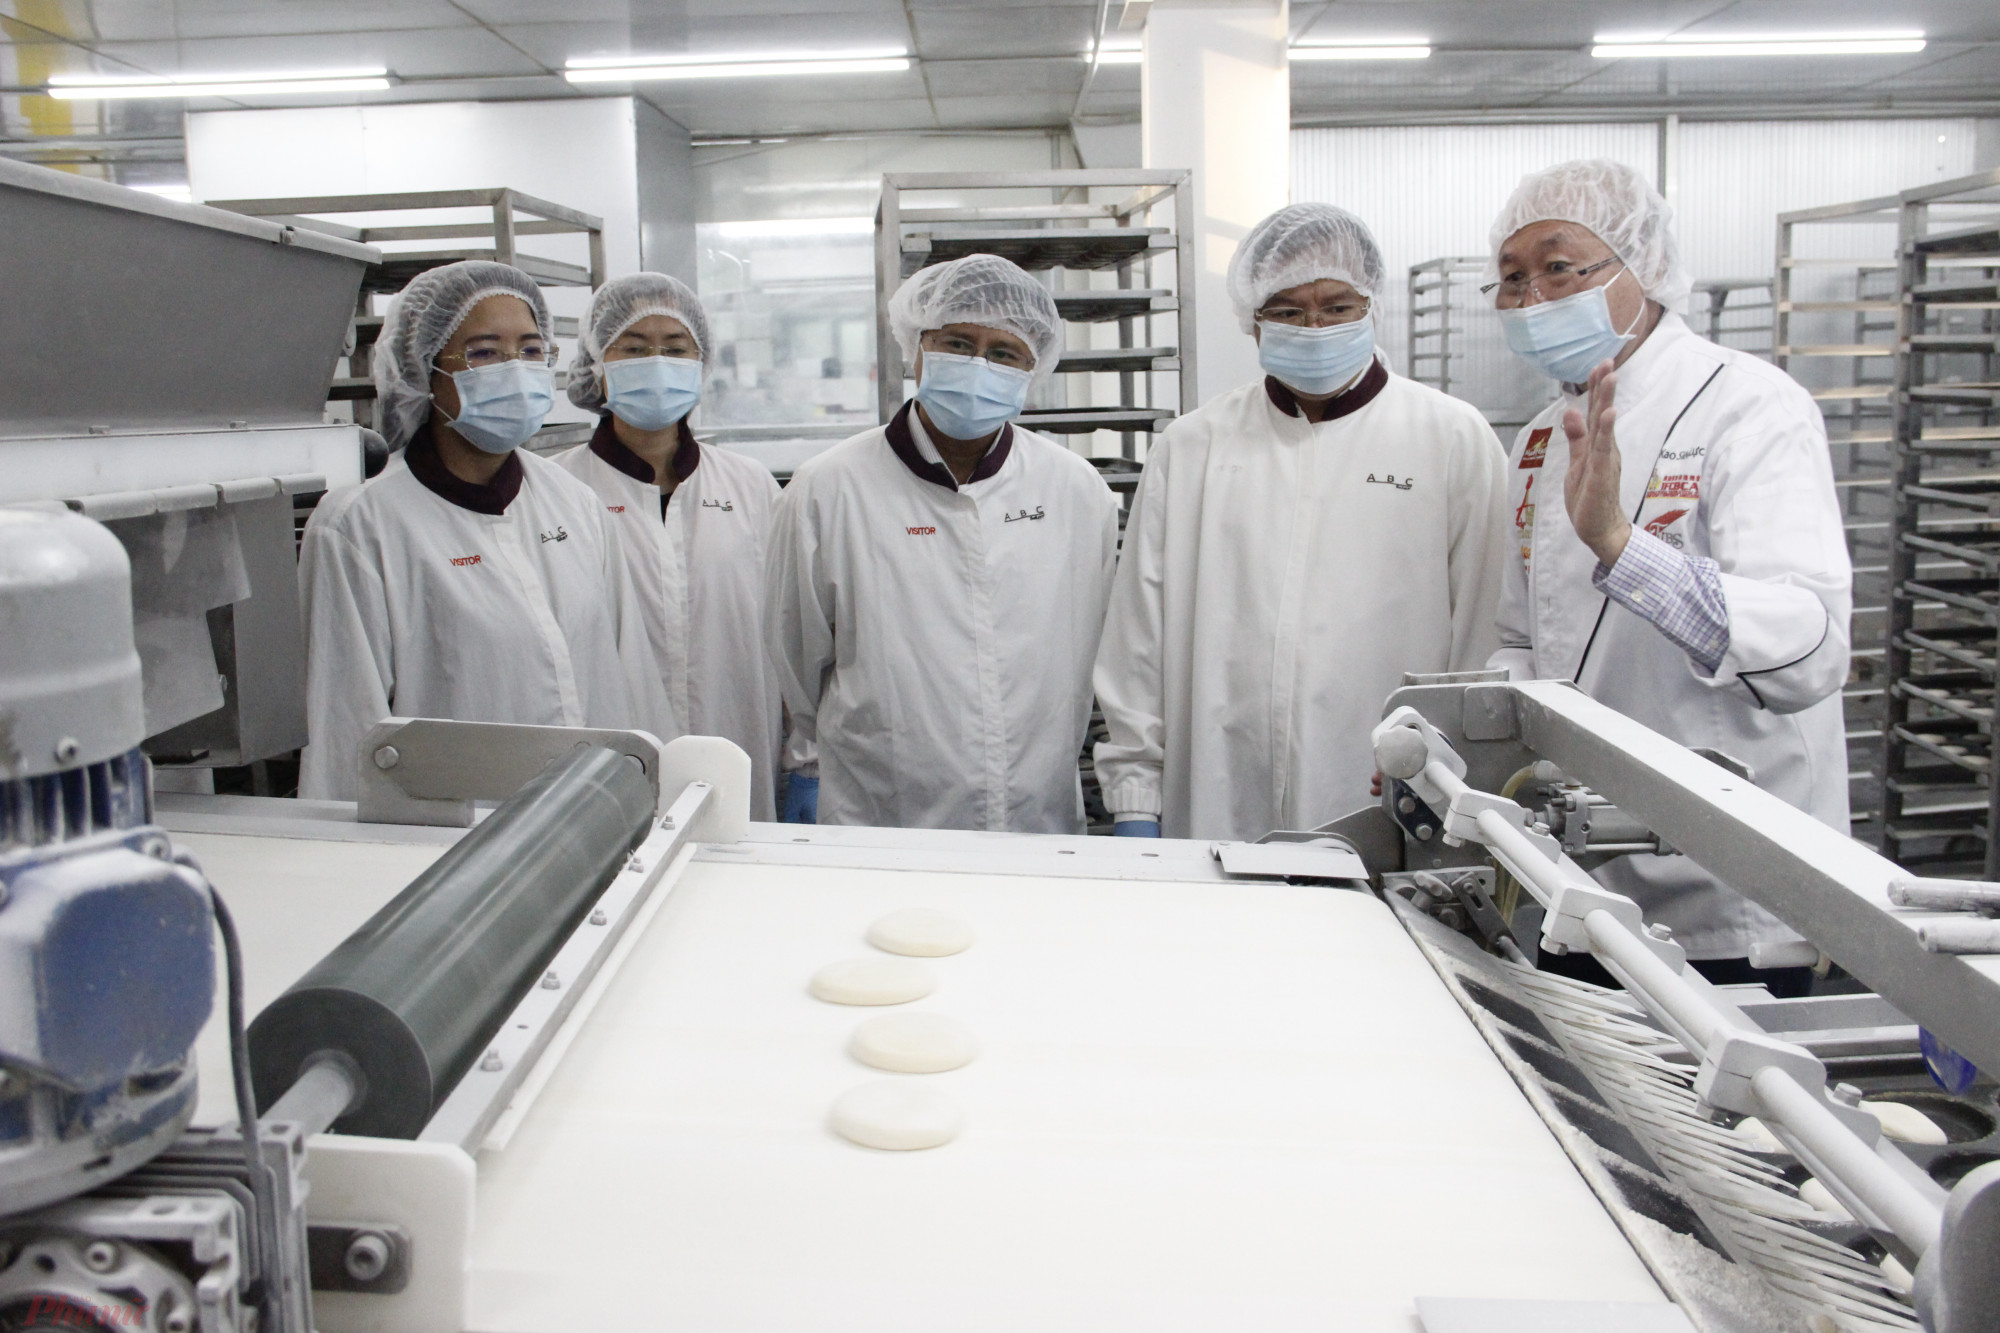 Tham quan xưởng làm bánh ABC, tìm hiểu quy trình sản xuất bánh của một thương hiệu Việt nổi tiếng.